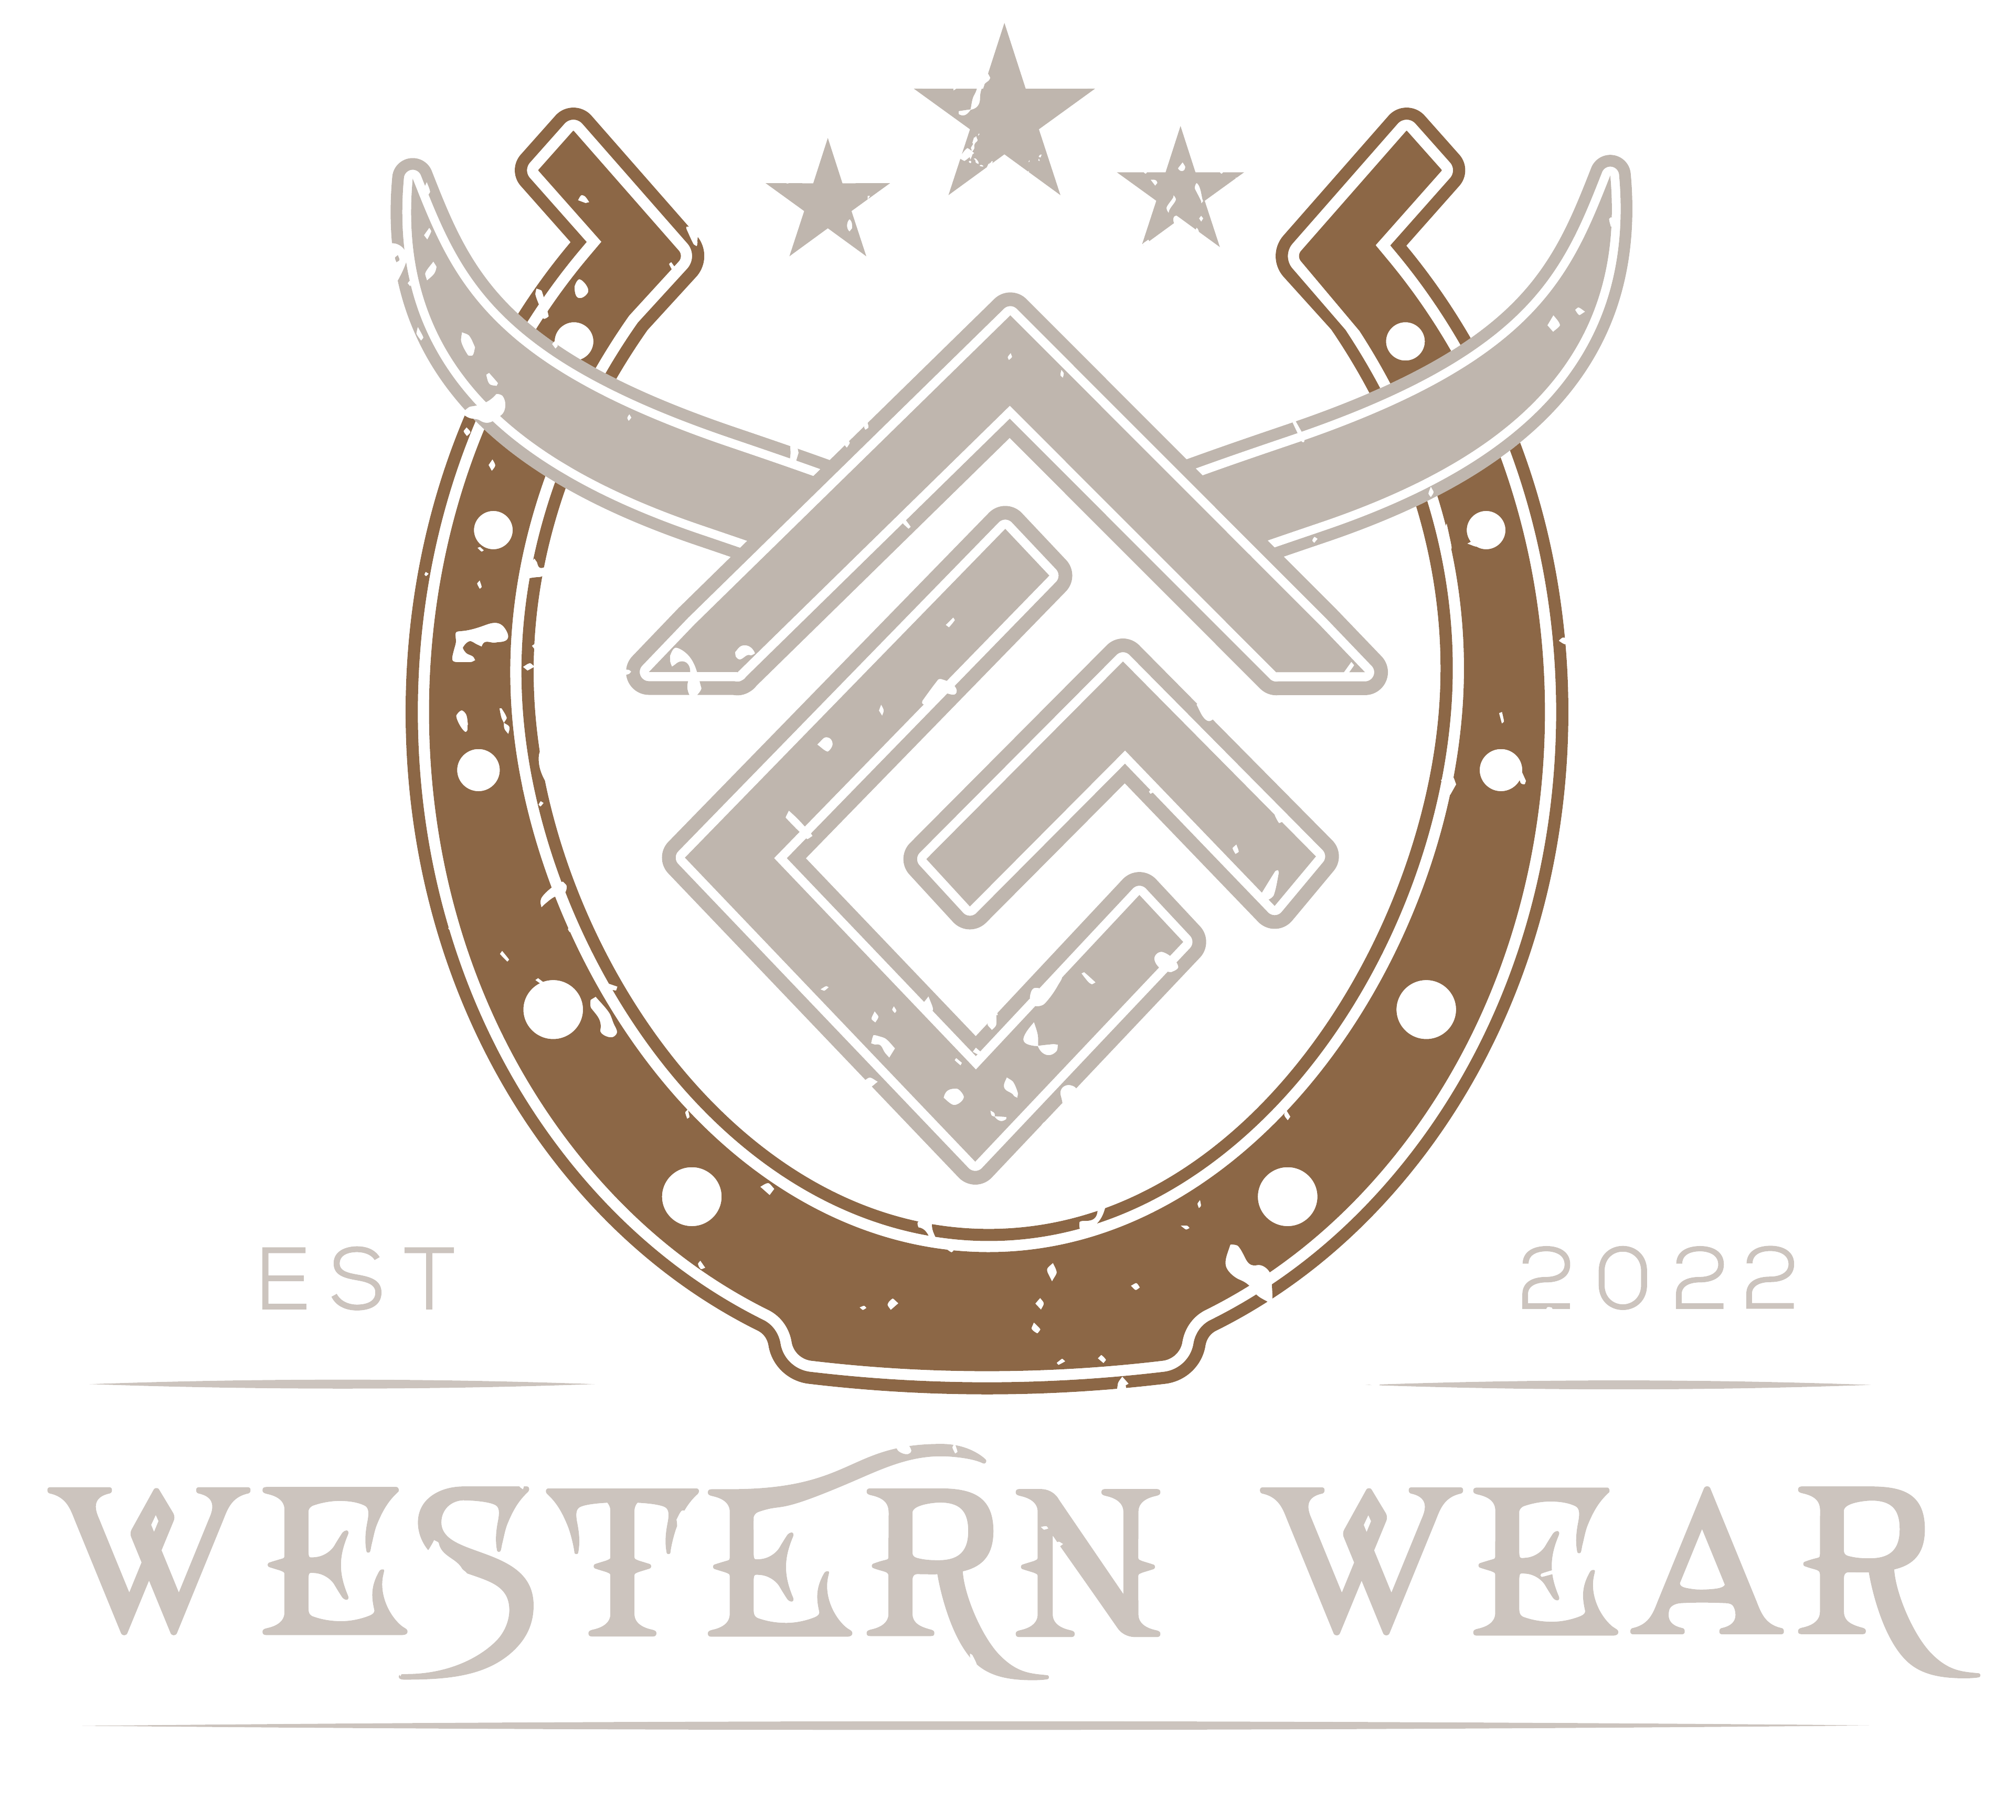 All Good Western Wear 